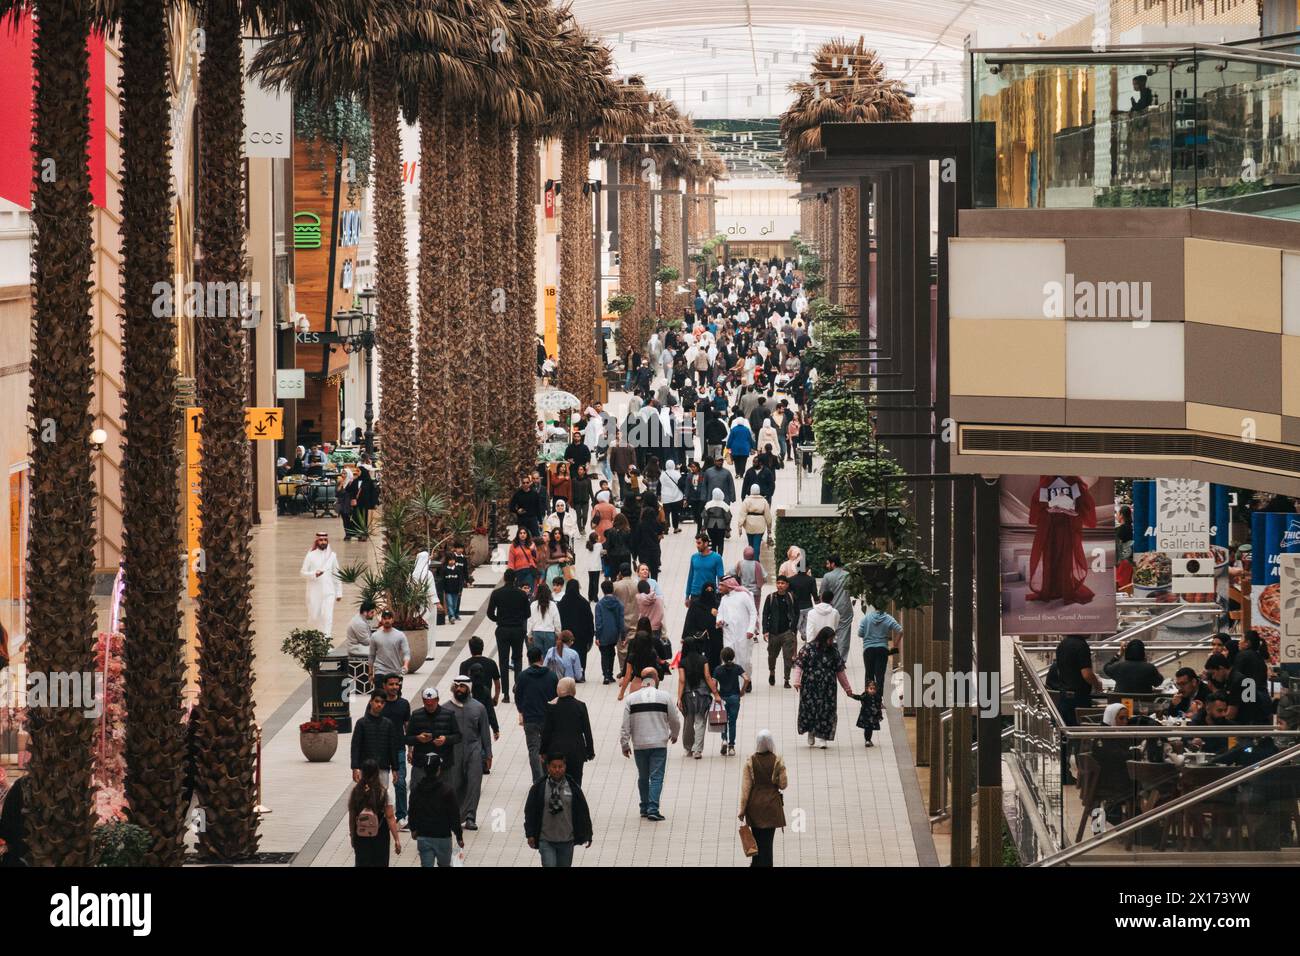 Las palmeras bordean una calle concurrida dentro de las avenidas, el centro comercial más grande de Kuwait Foto de stock